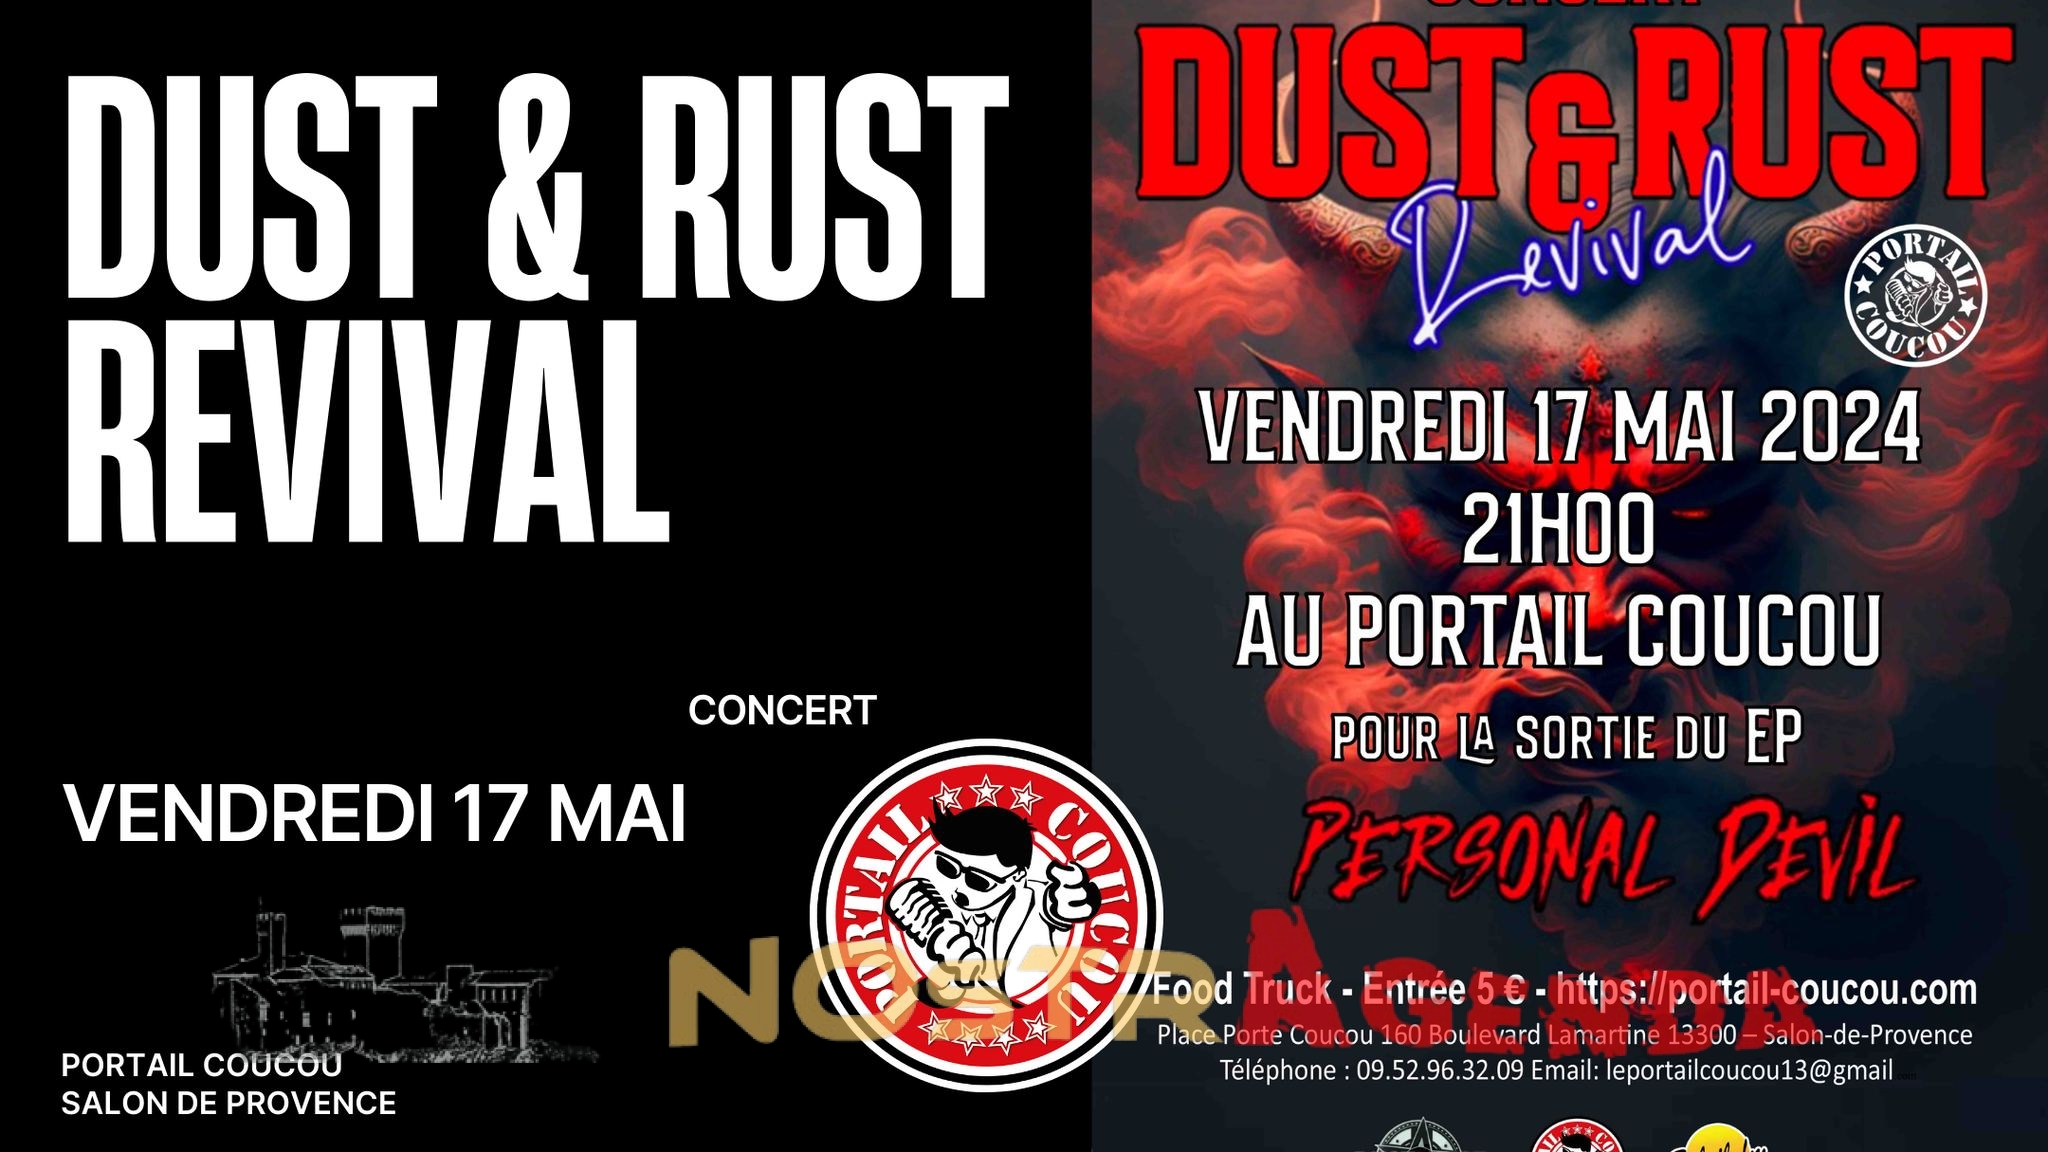 dust & rust revival Portail Coucou Salon concert Nostragenda